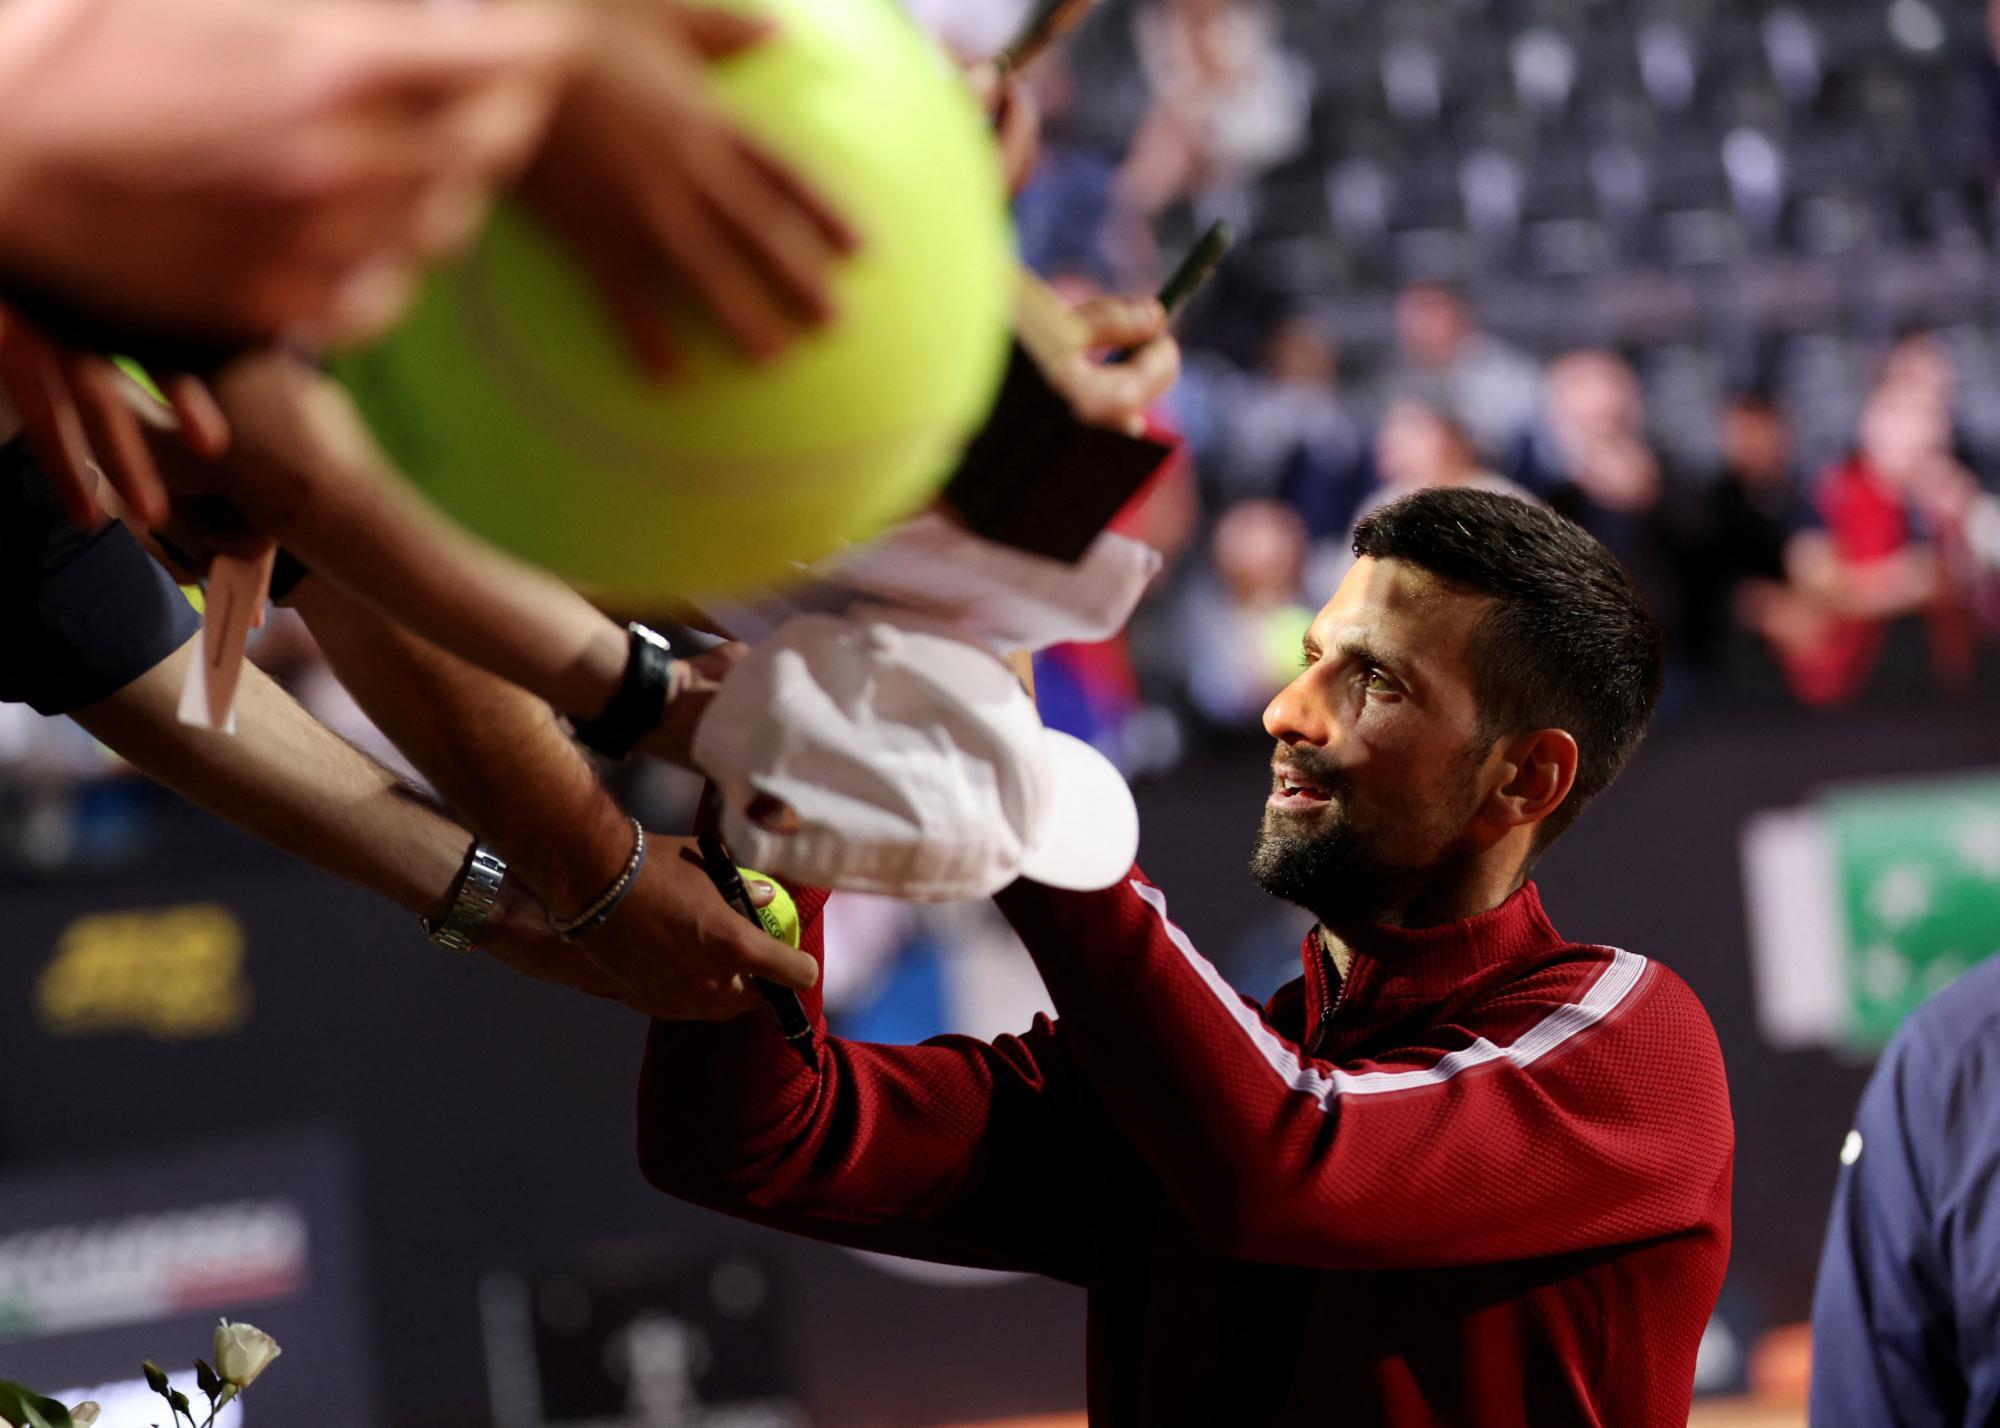 Tennis-Star Djokovic nach Attacke in Rom mit blutender Wunde am Kopf